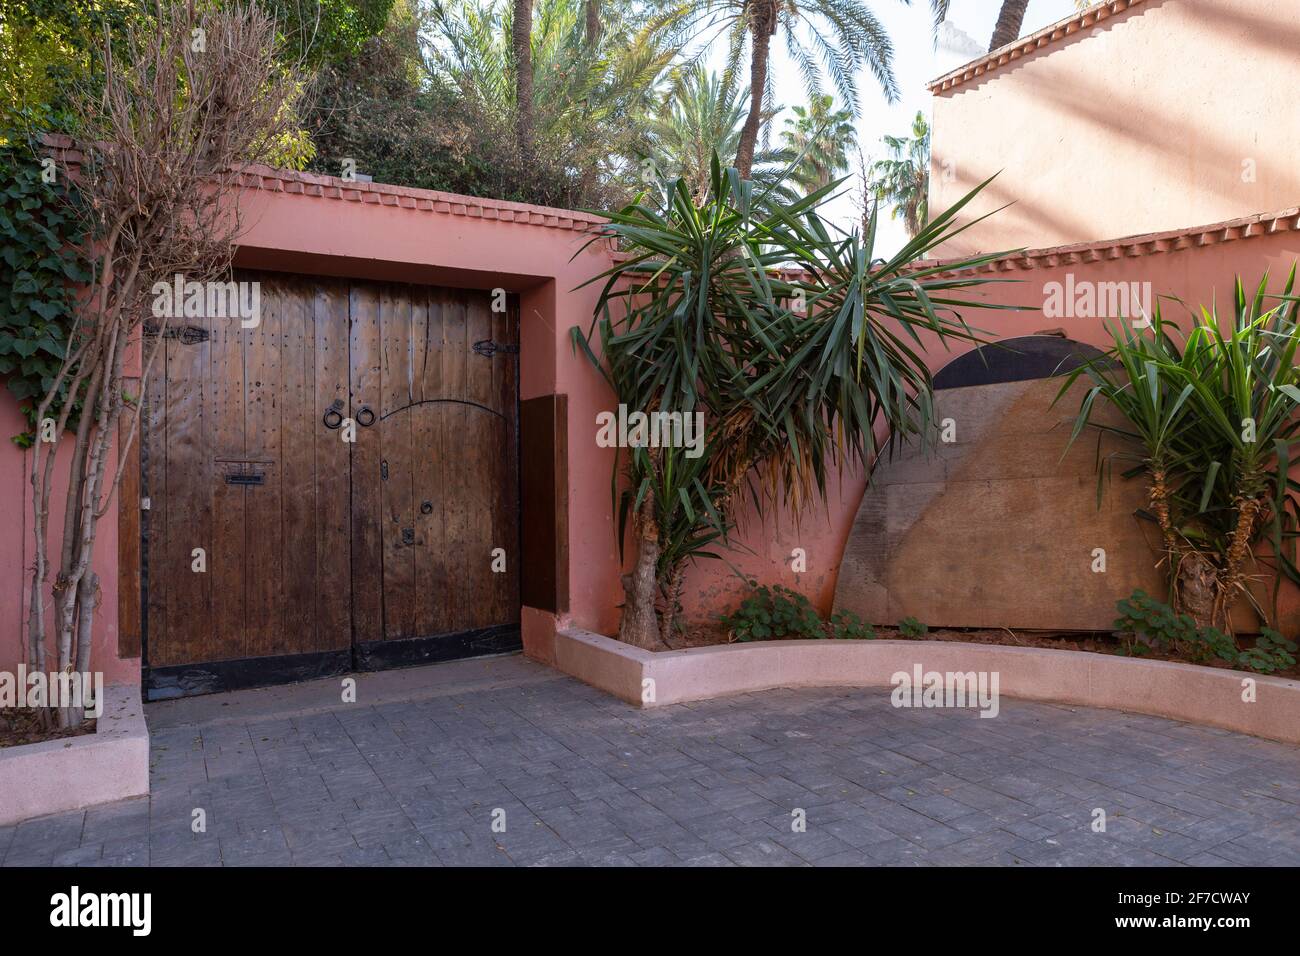 Porte en bois dans un mur peint rougeâtre avec une large porte à l'avant et un immense jardin derrière dans la belle ville de Marrakech, au Maroc Banque D'Images